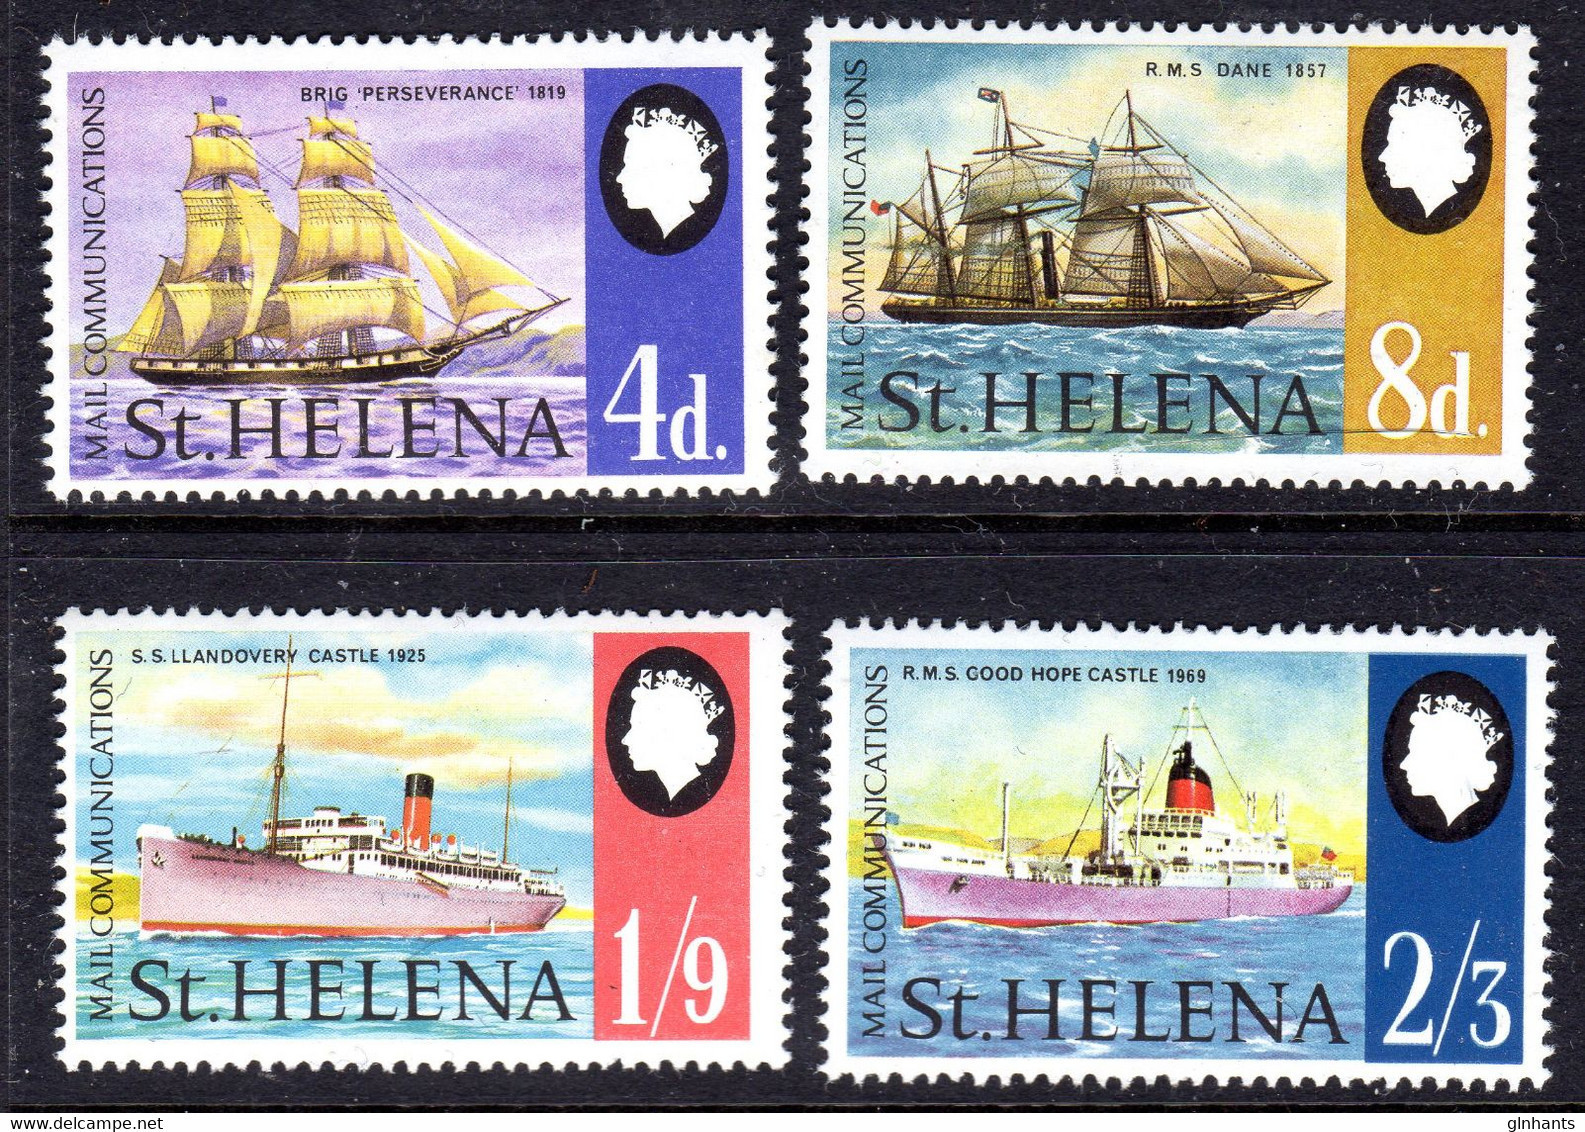 ST HELENA - 1969 MAIL COMMUNICATION SHIPS SET (4V) FINE MNH ** SG 241-244 - Saint Helena Island